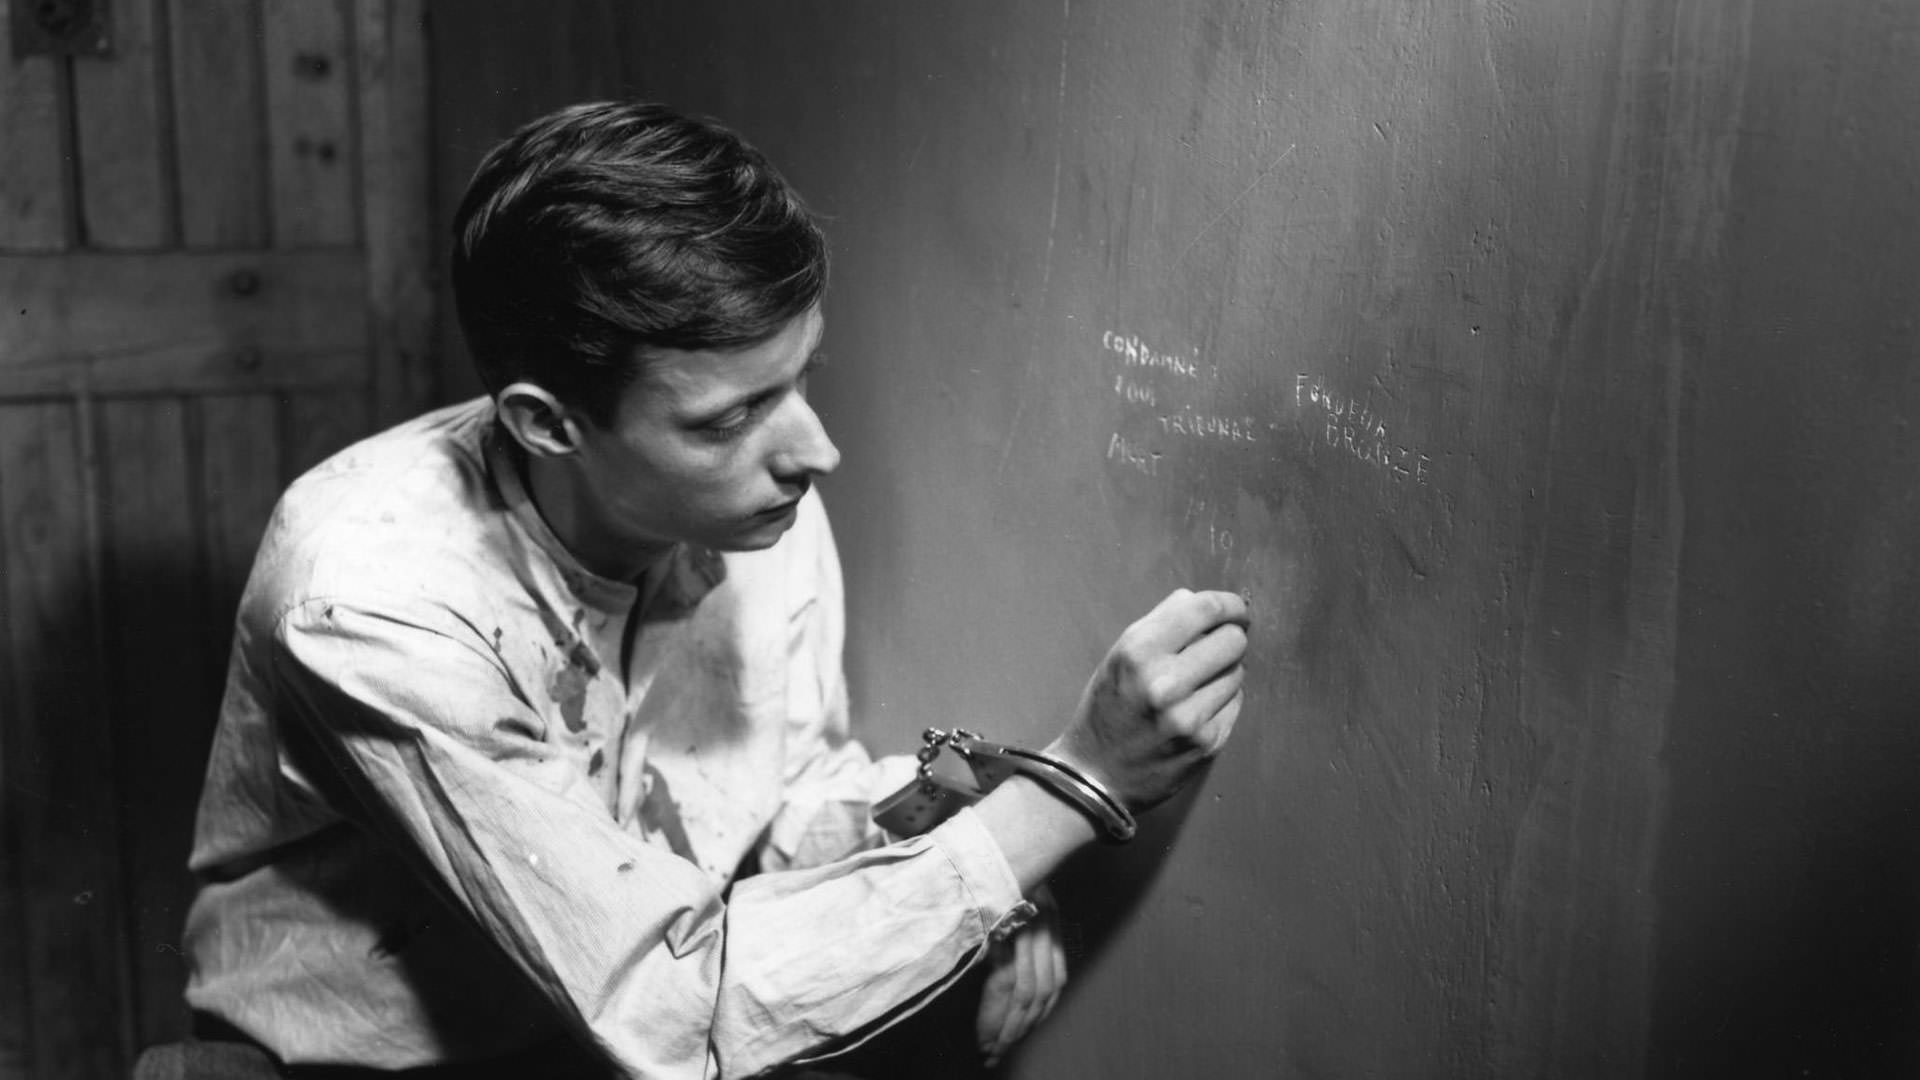 فرانسوا لتریه با دستانی دستبند زده در حال نوشتن روی دیوار یک سلول انفرادی در نمایی از فیلم مردی گریخت به کارگردانی روبر برسون